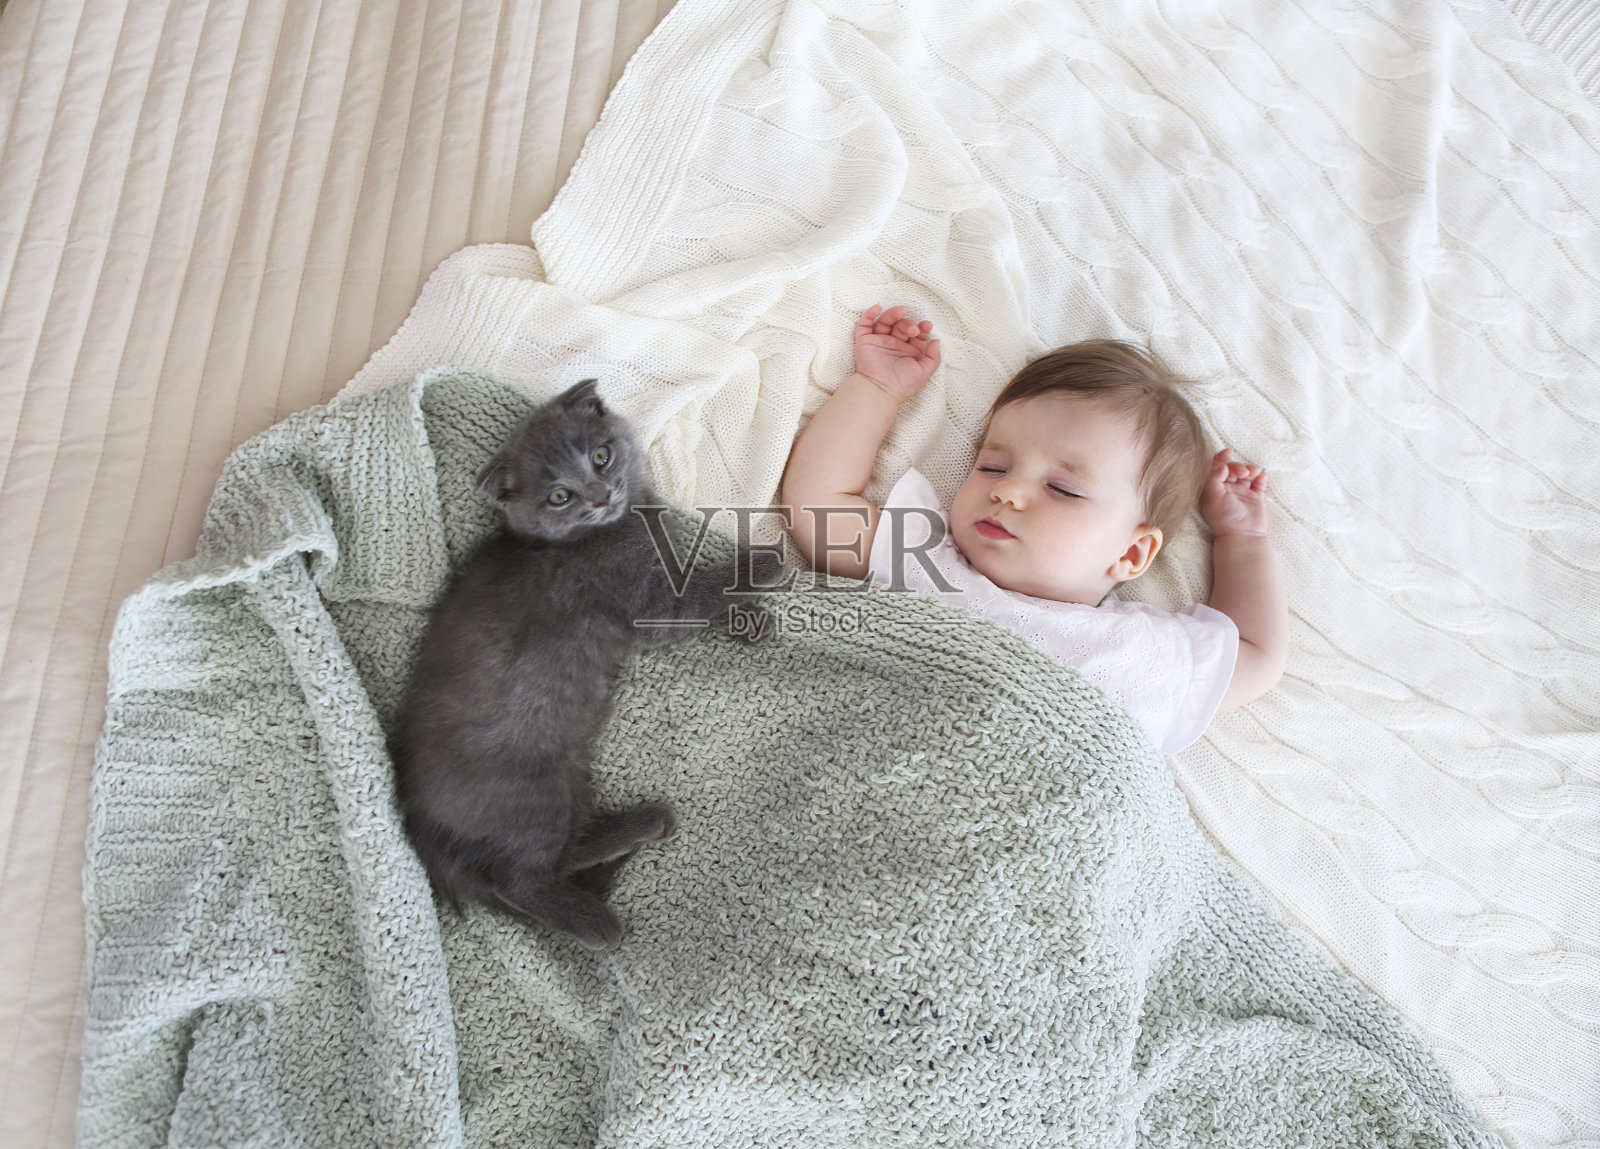 一个美丽的熟睡婴儿的特写肖像照片摄影图片